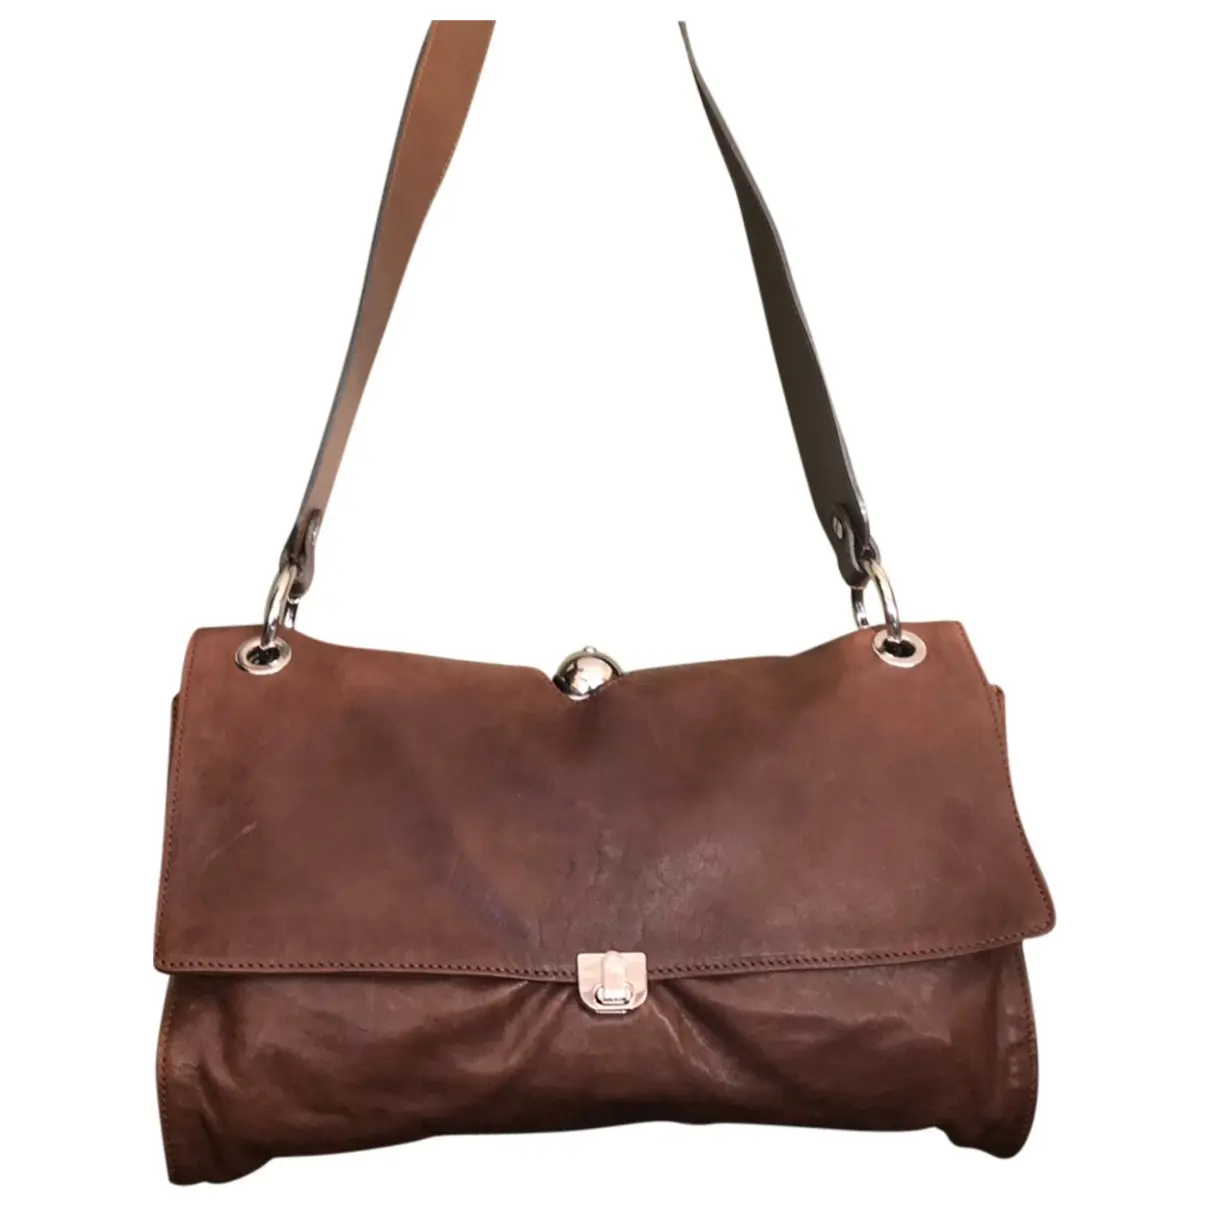 Leather handbag Marni - Vintage